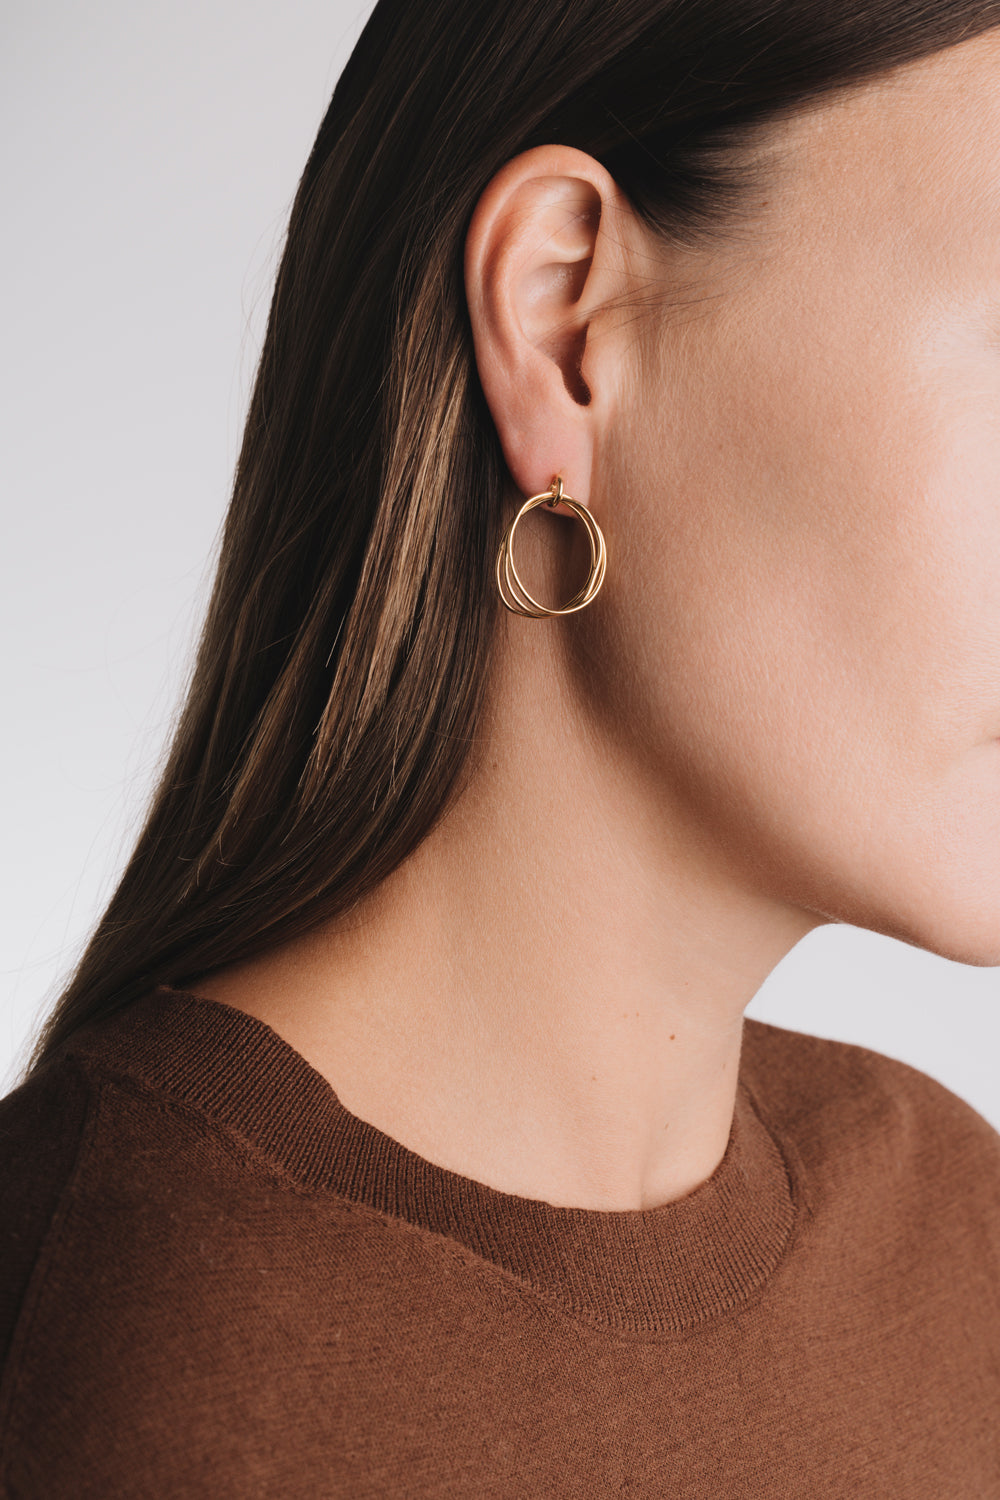 Triple oval earrings